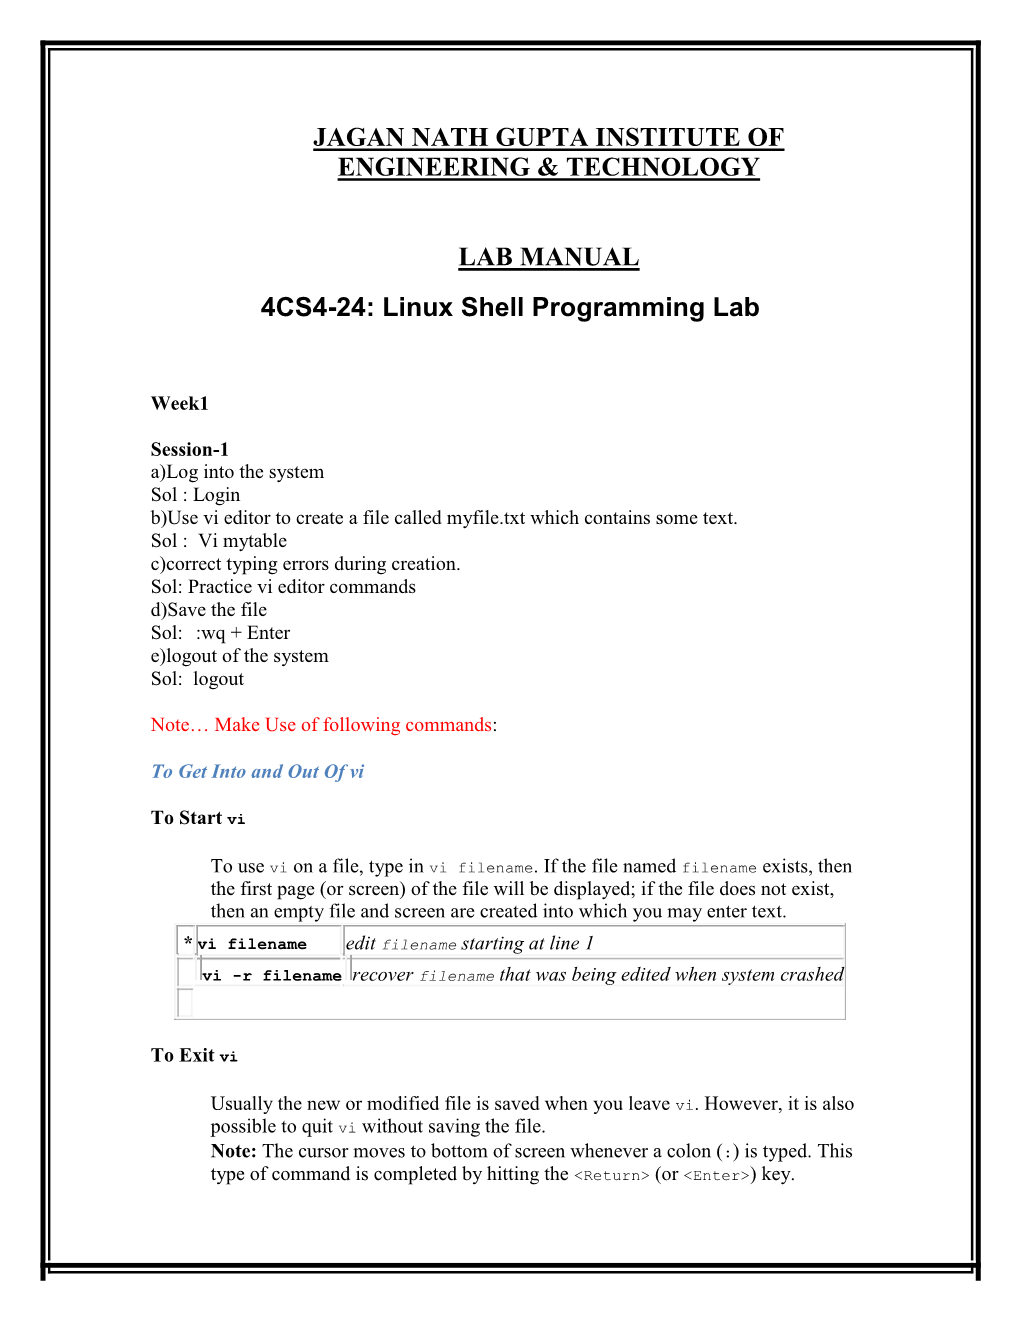 Linux Shell Programming Lab